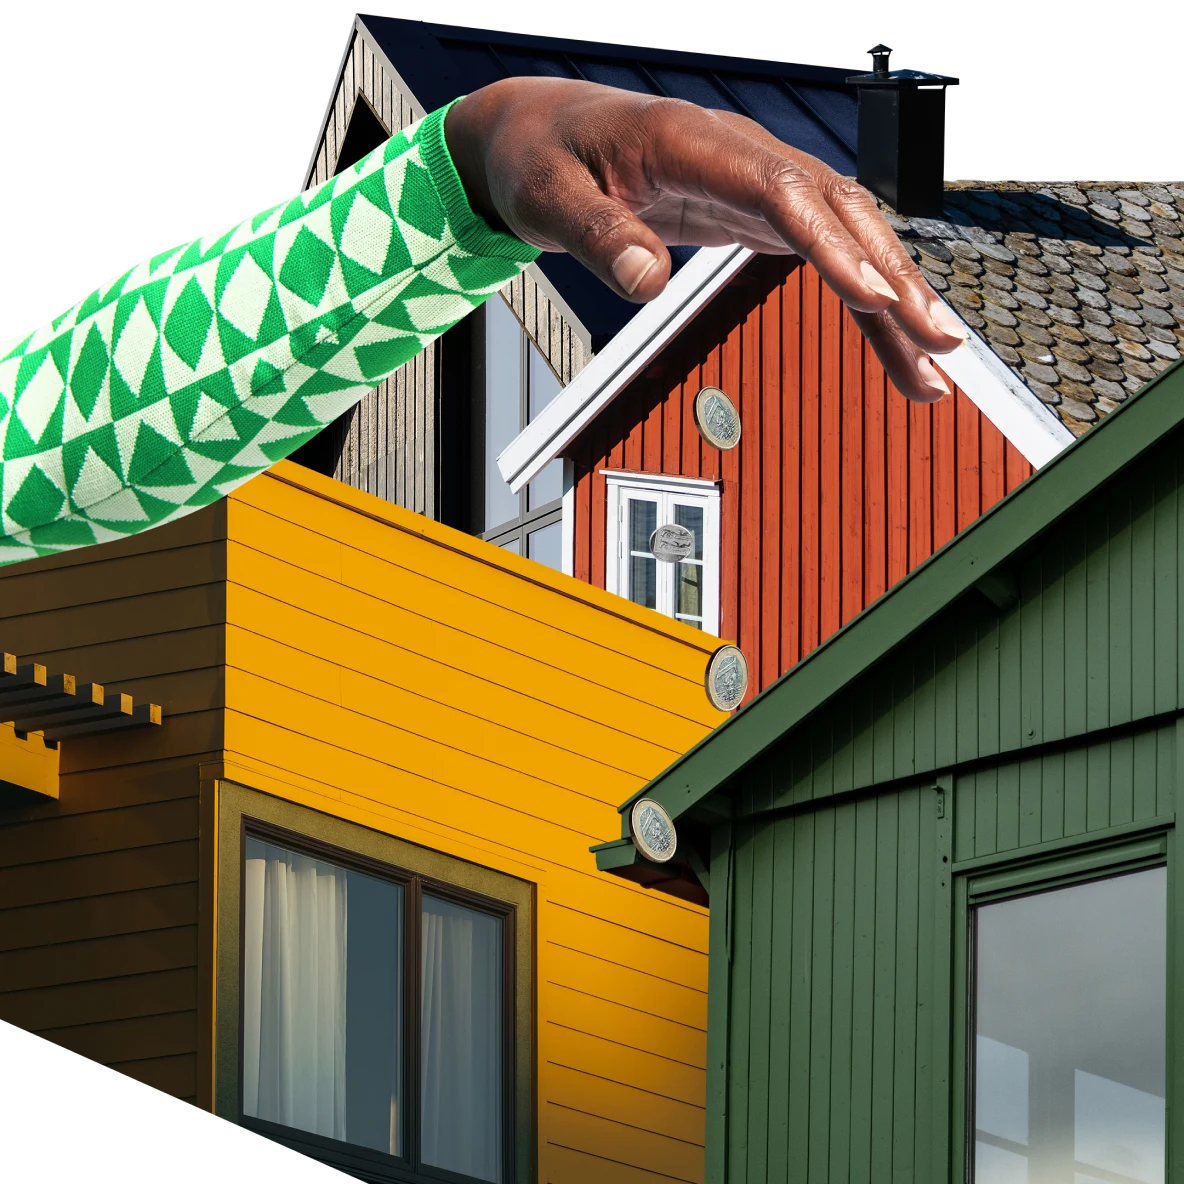 Eine Collage mit Hausfassaden in Braun, Rot, Gelb und Grün. Ein Schwarzer Arm in einem grün und weiß karierten Pullover schwebt im Vordergrund über den Häusern.